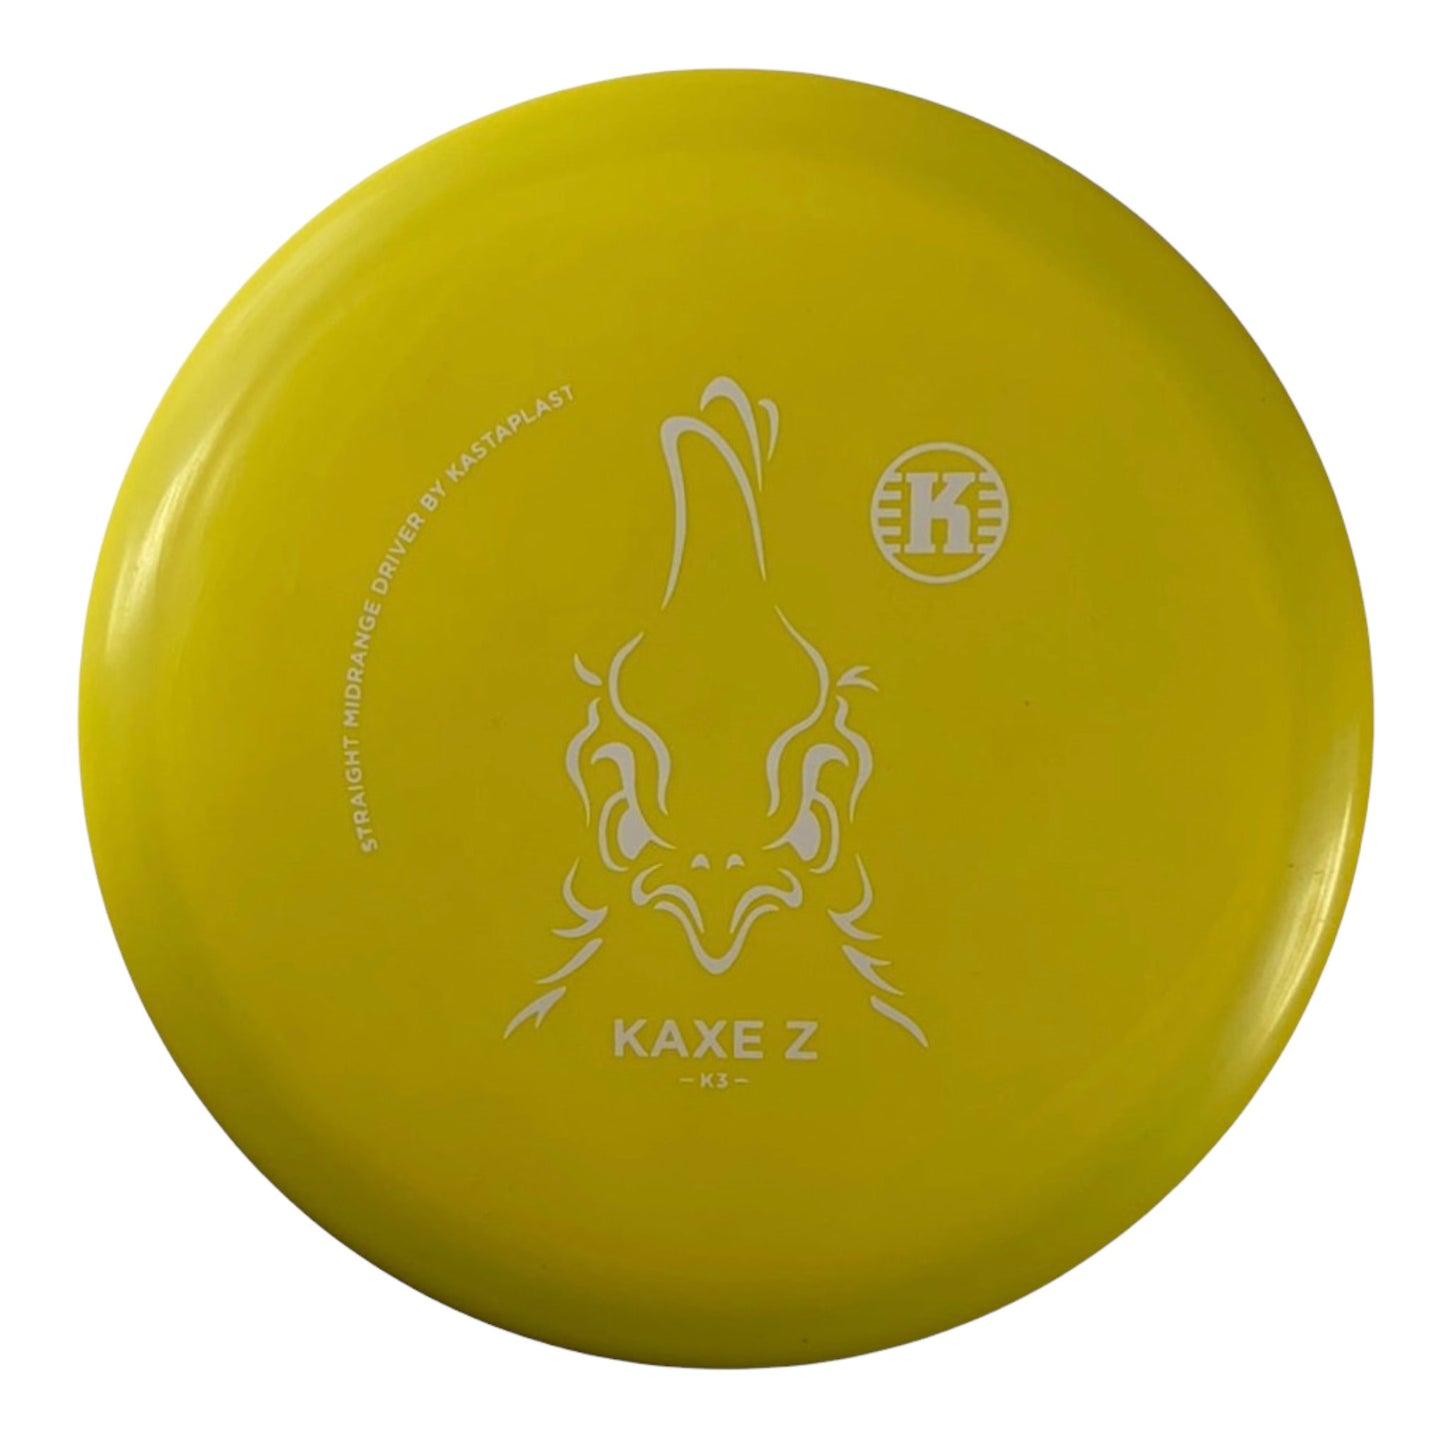 Kastaplast Kaxe Z | K3 | Yellow/White 171g Disc Golf